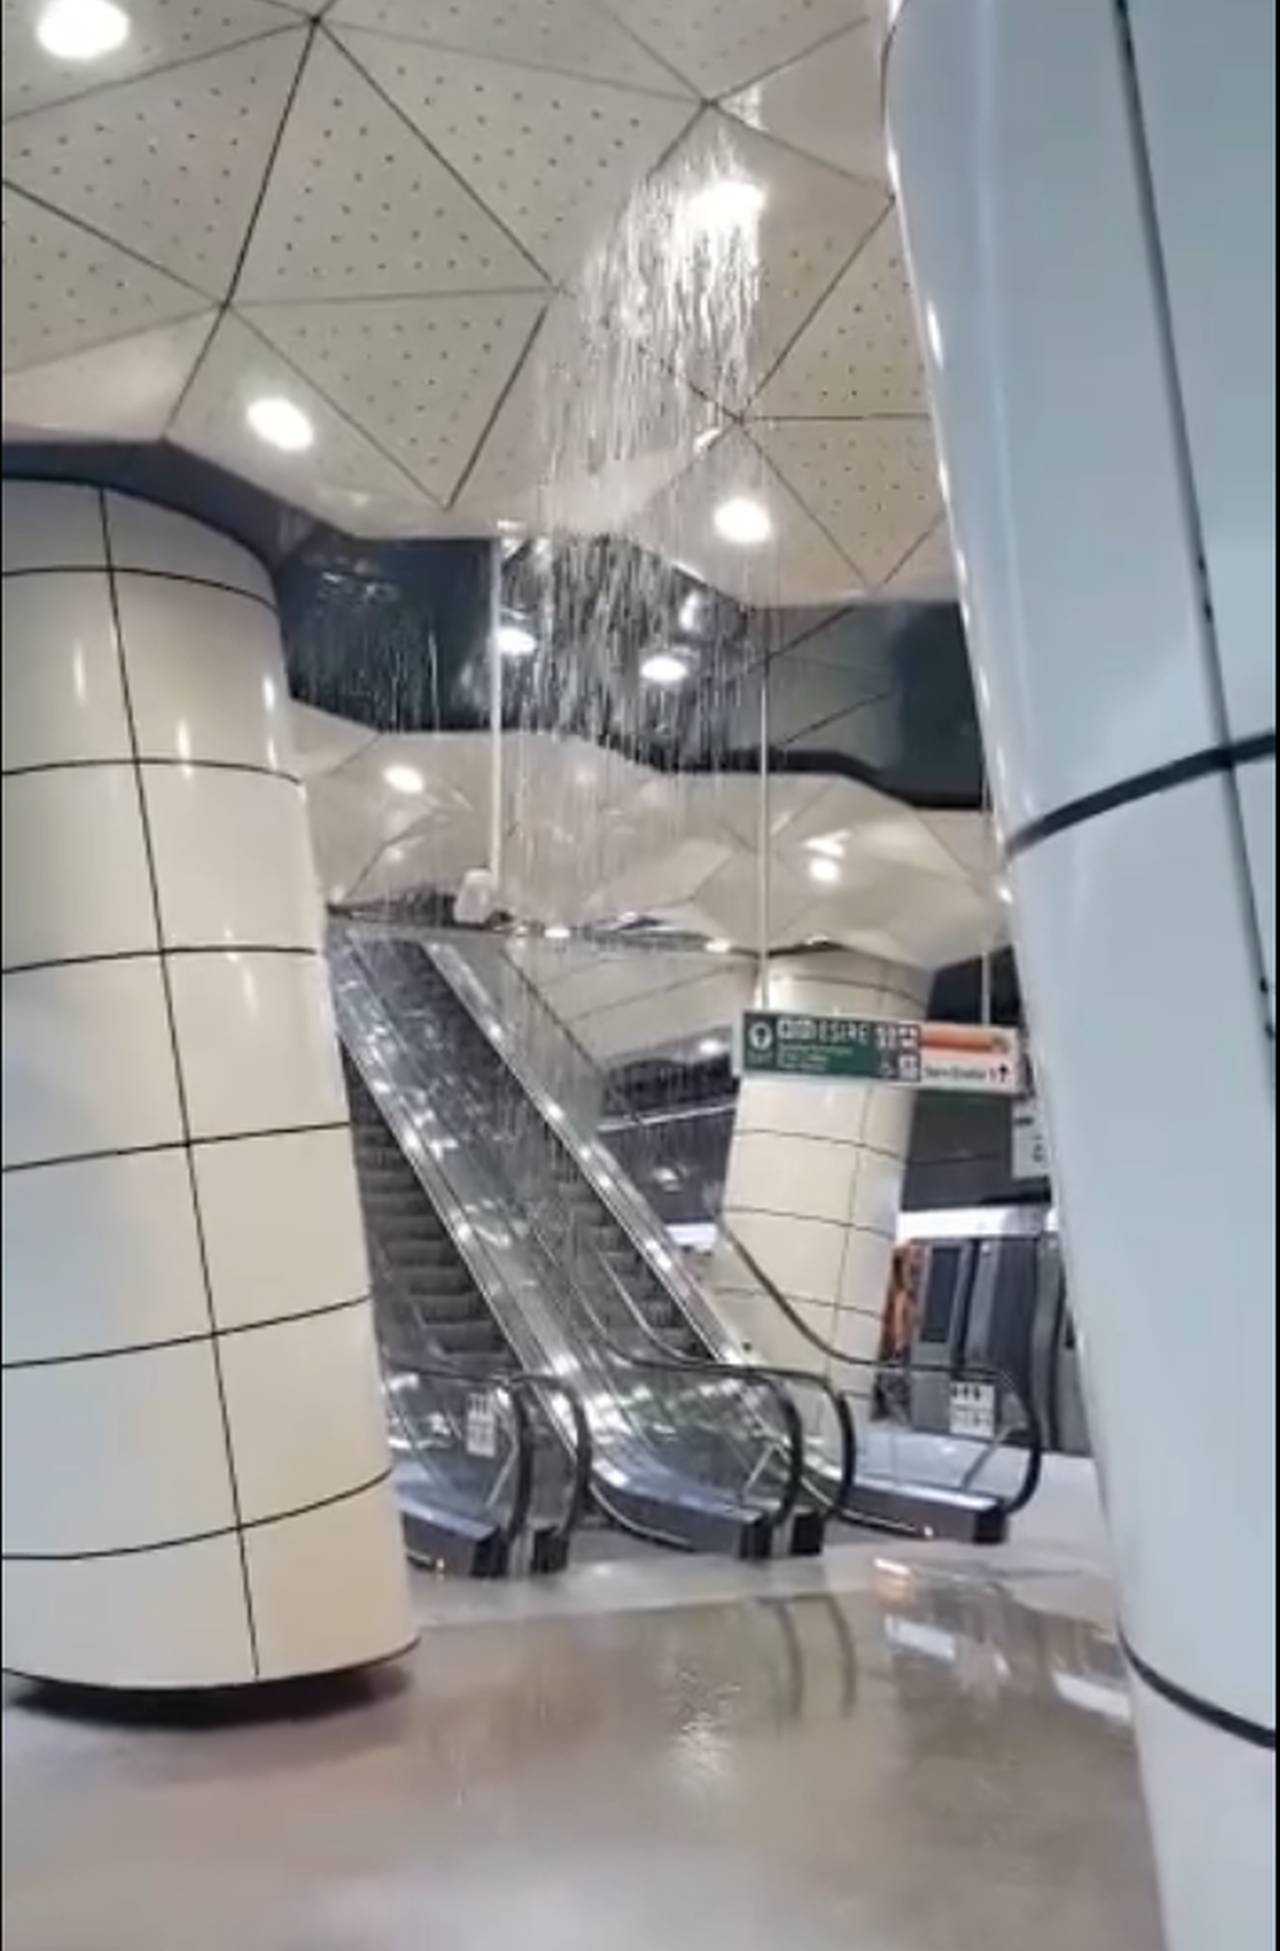 Metrorex confirmă avaria de la noua linie de metrou. Apa a curs din tavan în stația Eroilor 2